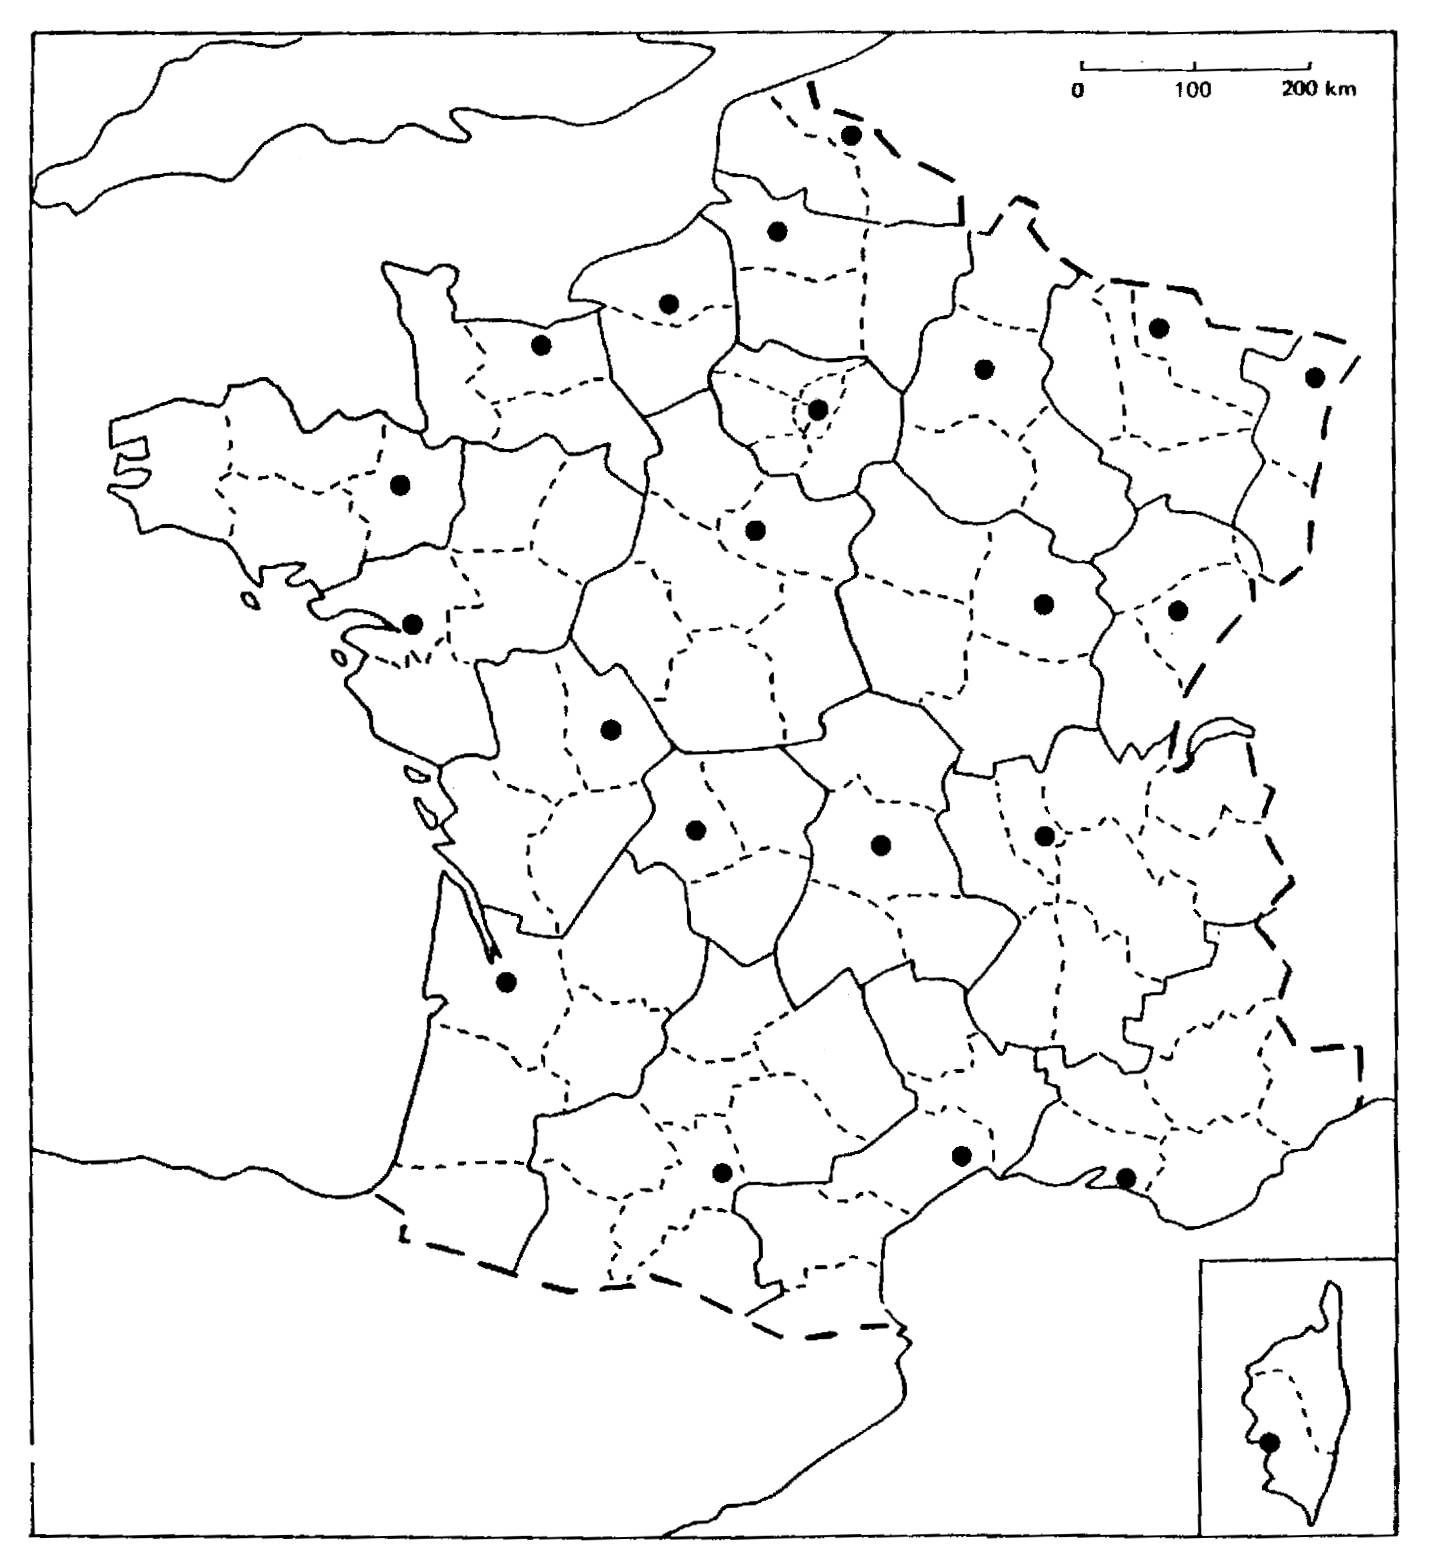 Carte De La France À Compléter | My Blog intérieur Carte De France Region A Completer